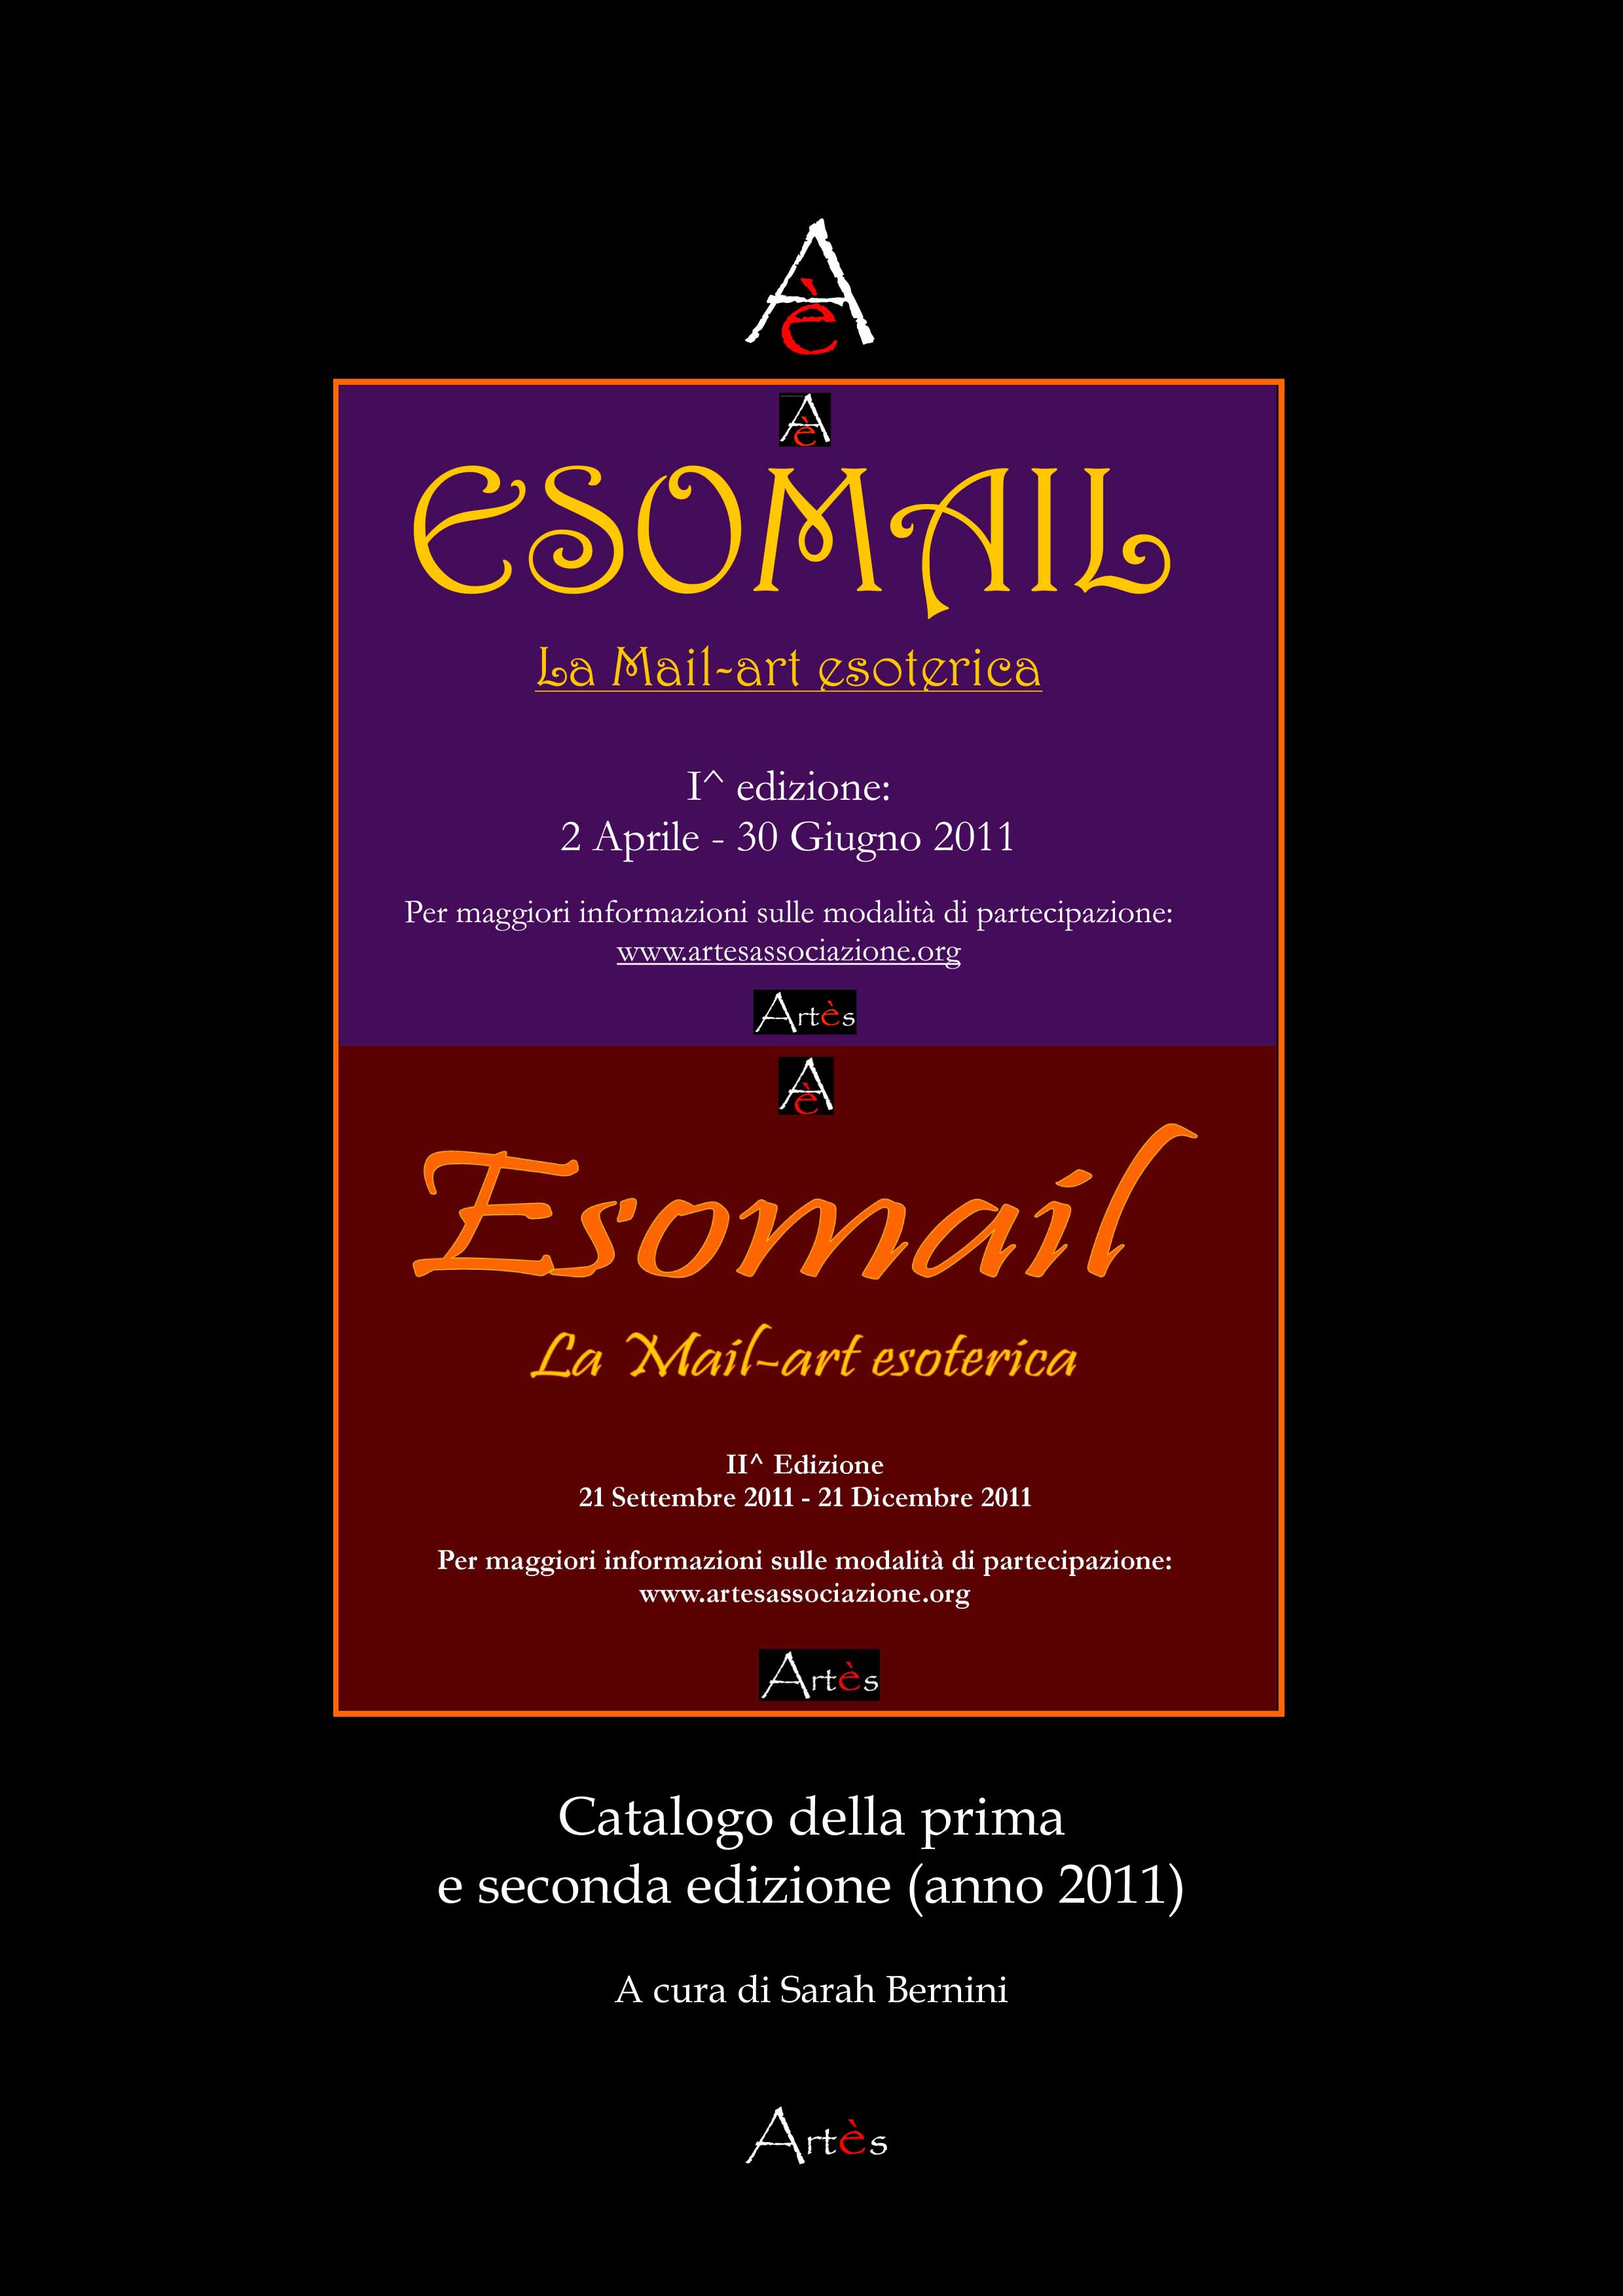 Catalogo della I^ e II^ edizione di Esomail